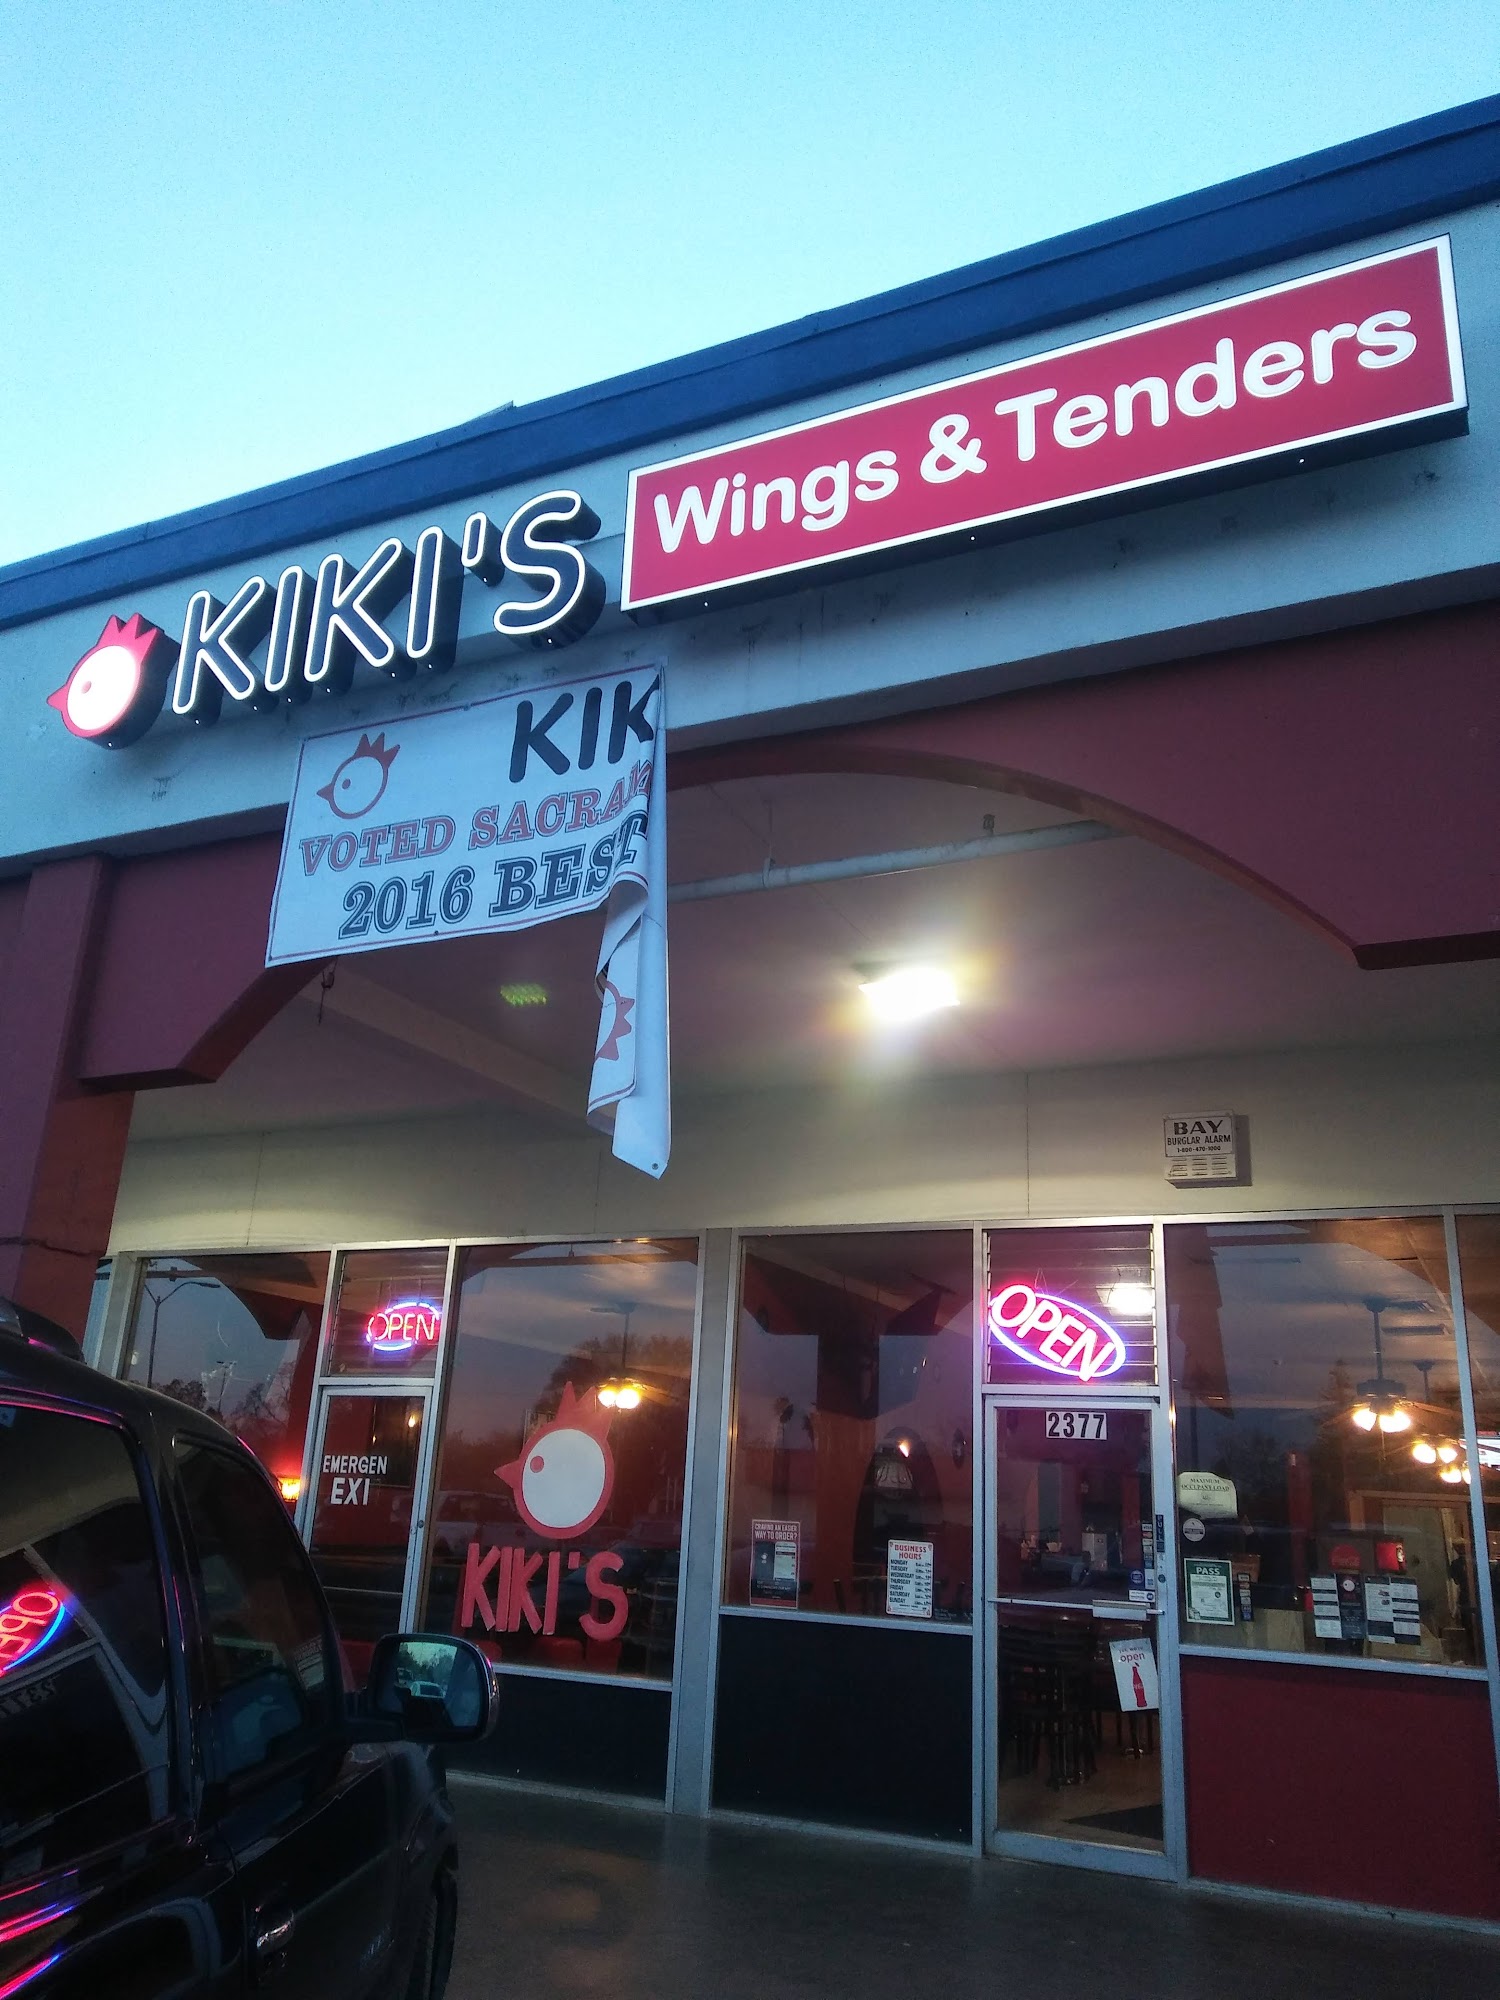 Kiki's Chicken Place NORTHGATE